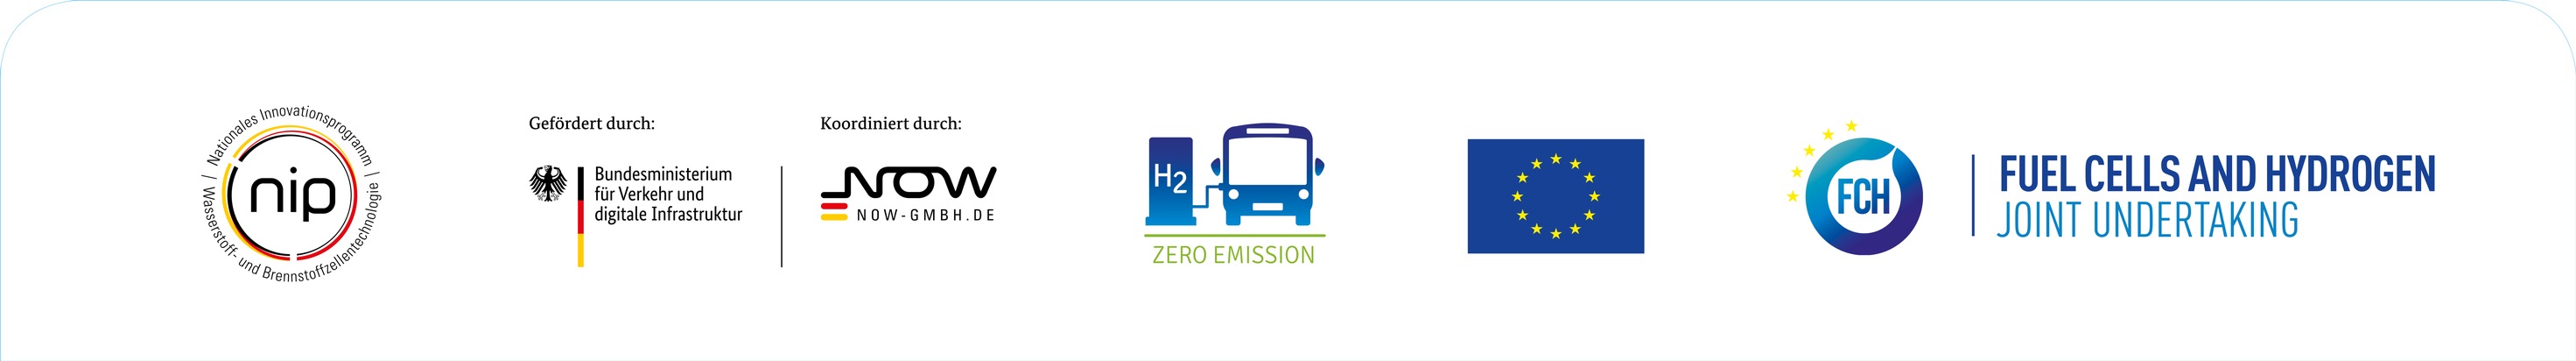 WSW-Wasserstoffbusse erreichen Kostenparität mit Dieselbussen